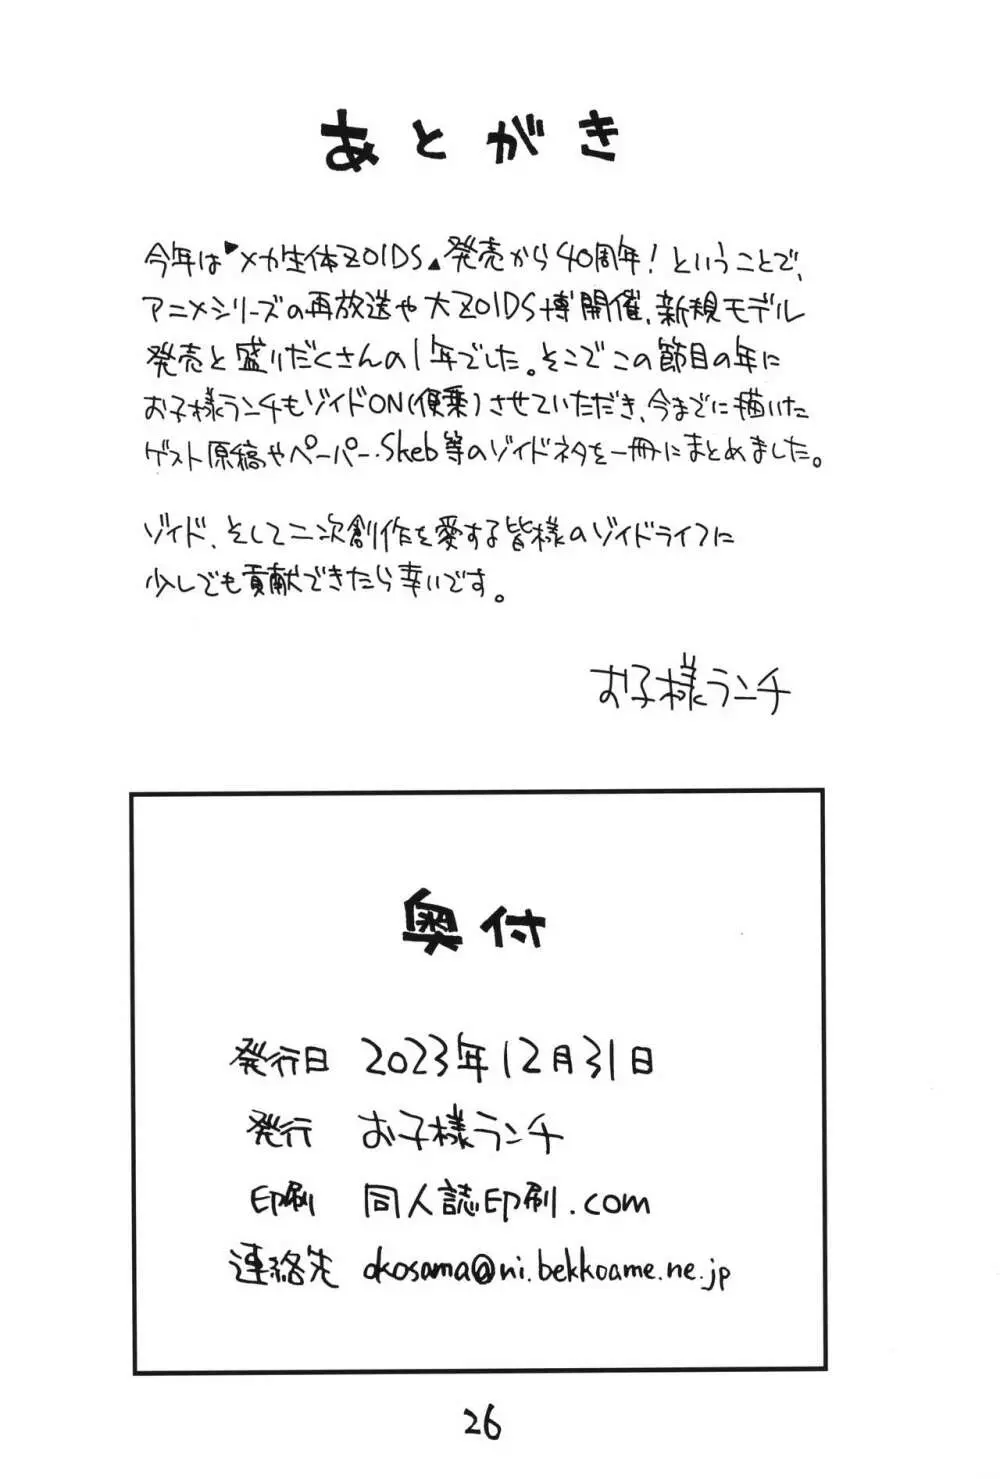 ZOIDSネタまとめ本 - page25